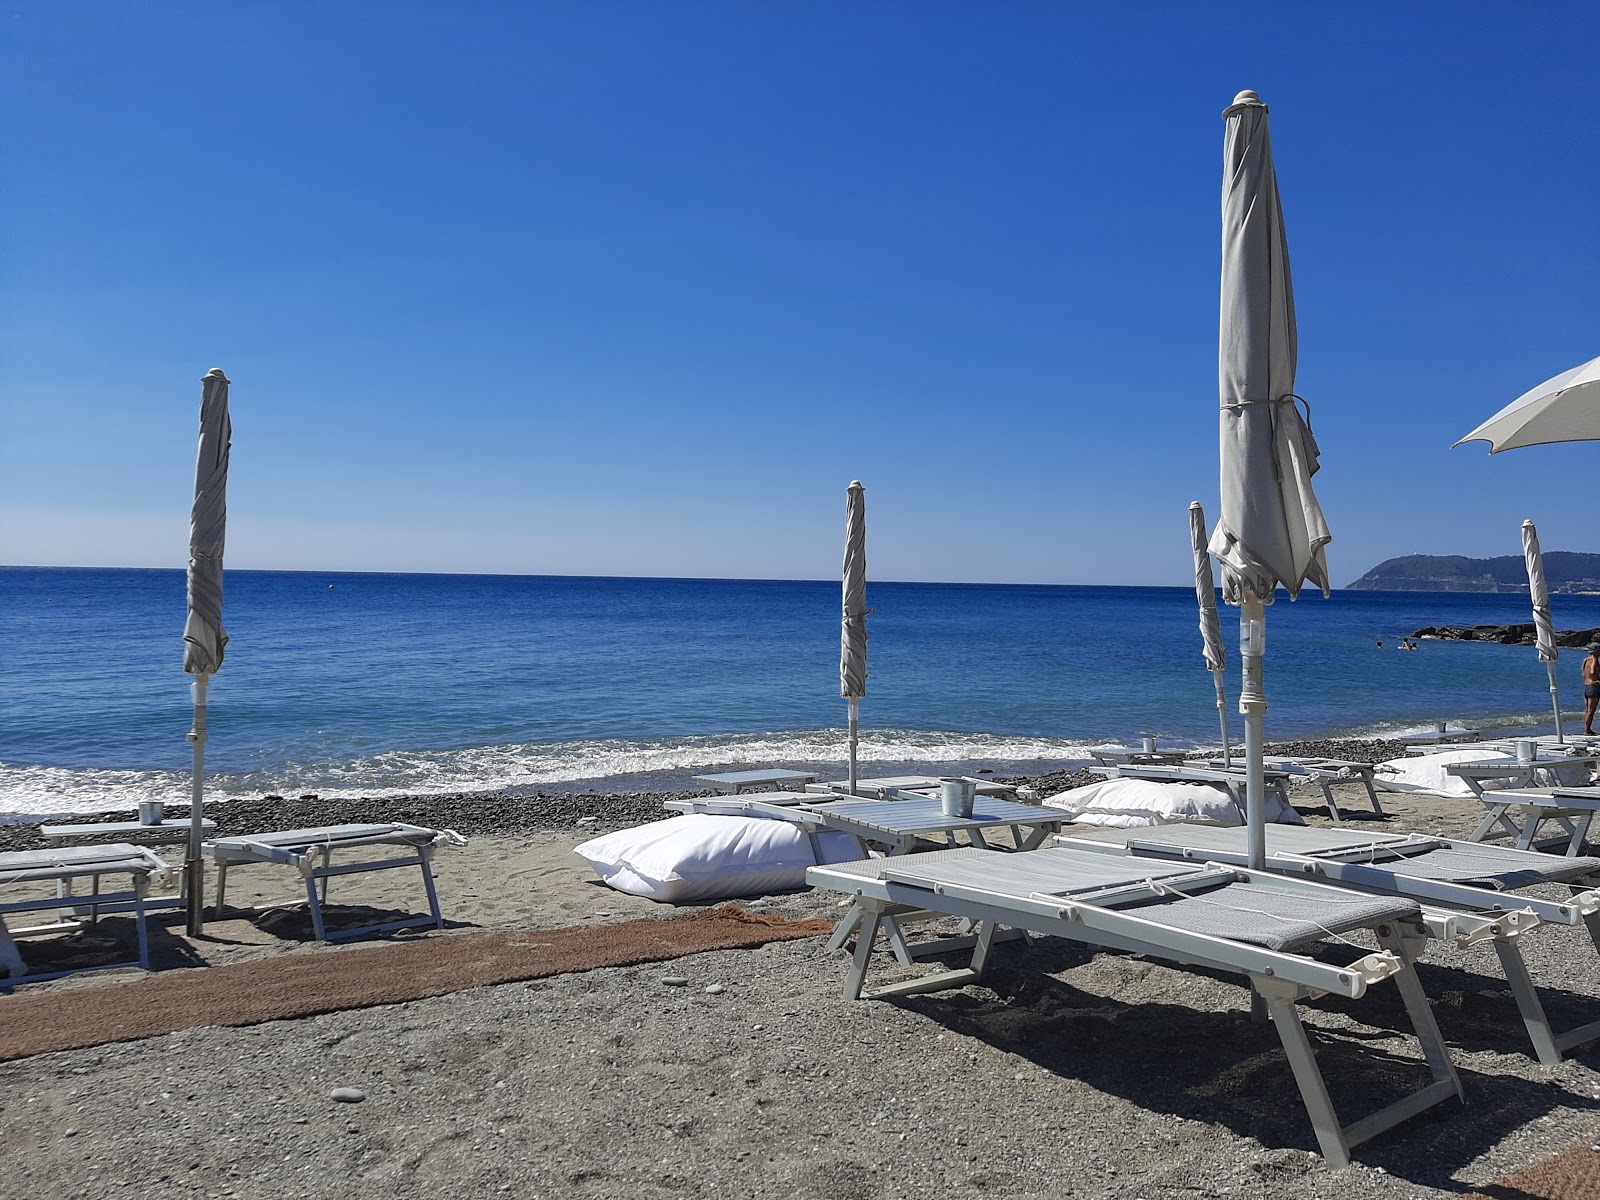 Foto af Spiaggia libera Alassio - populært sted blandt afslapningskendere